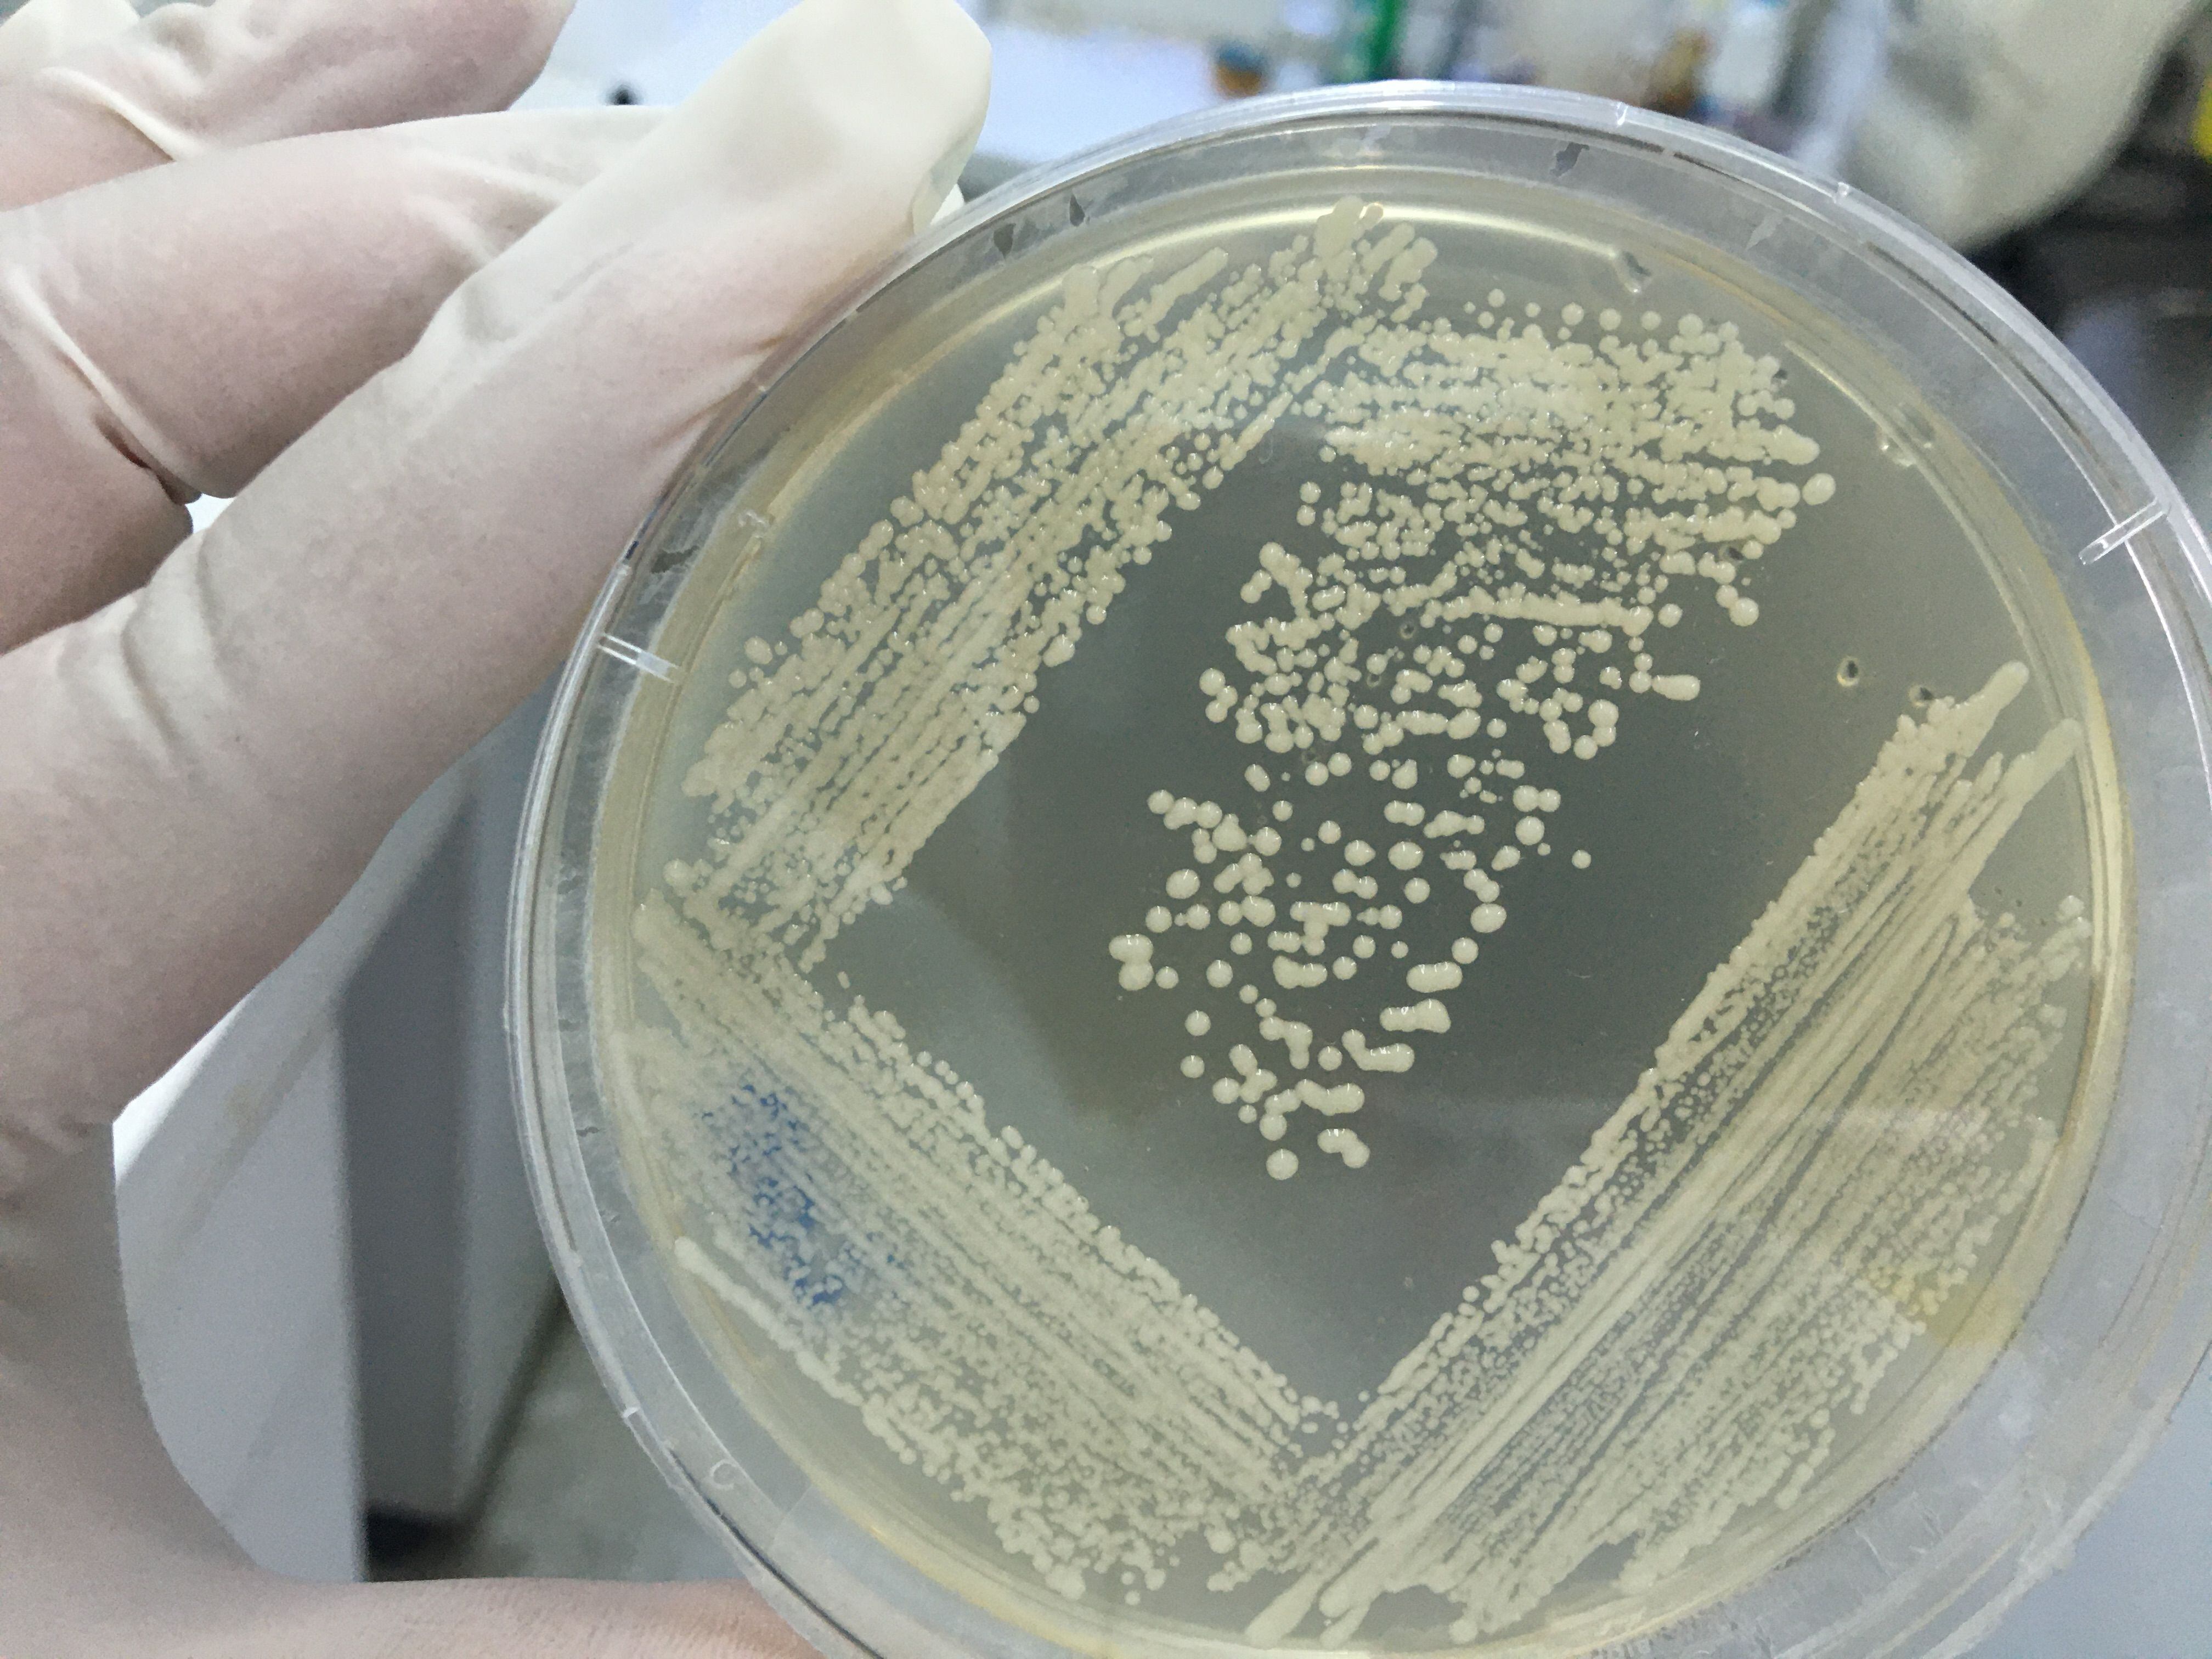 Probiótico contra la bacteria Helicobacter pylori, causante de varias enfermedades gástricas, incluido el cáncer.